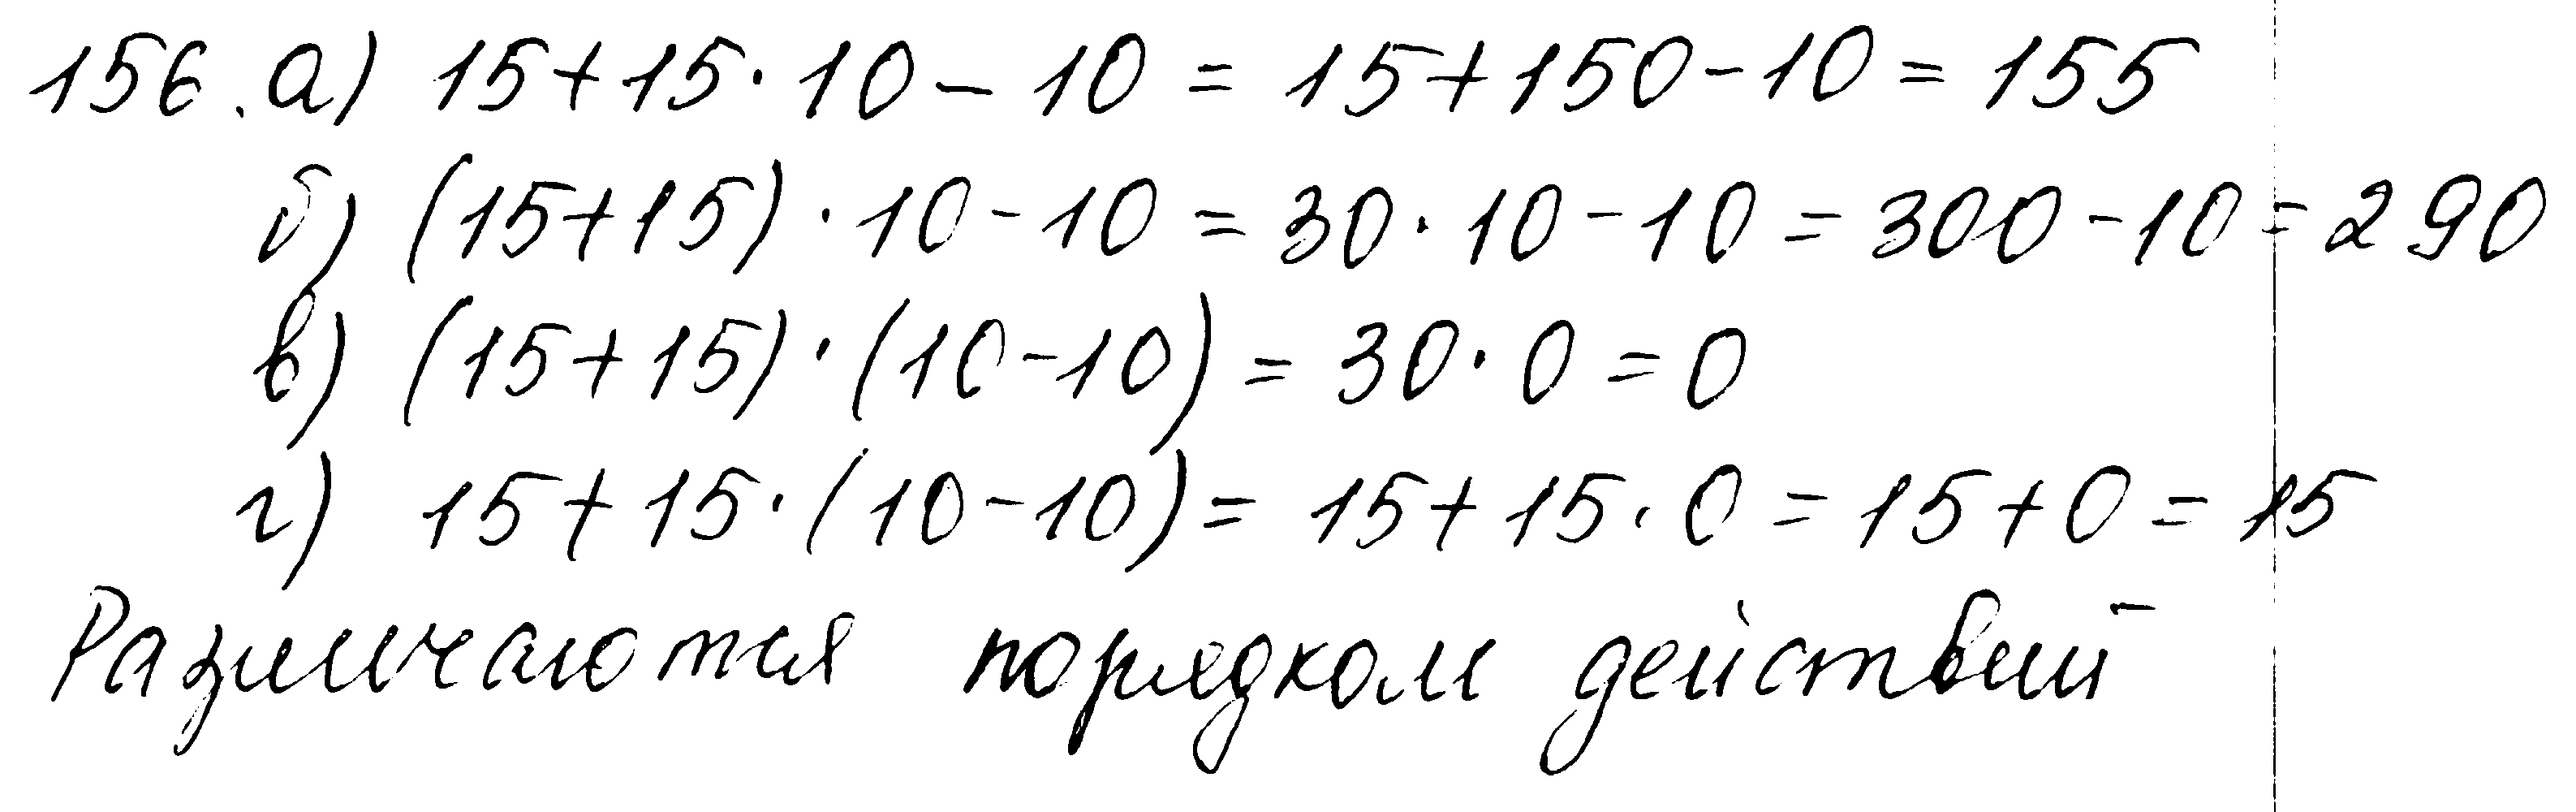 ГДЗ Математика 5 класс - 156